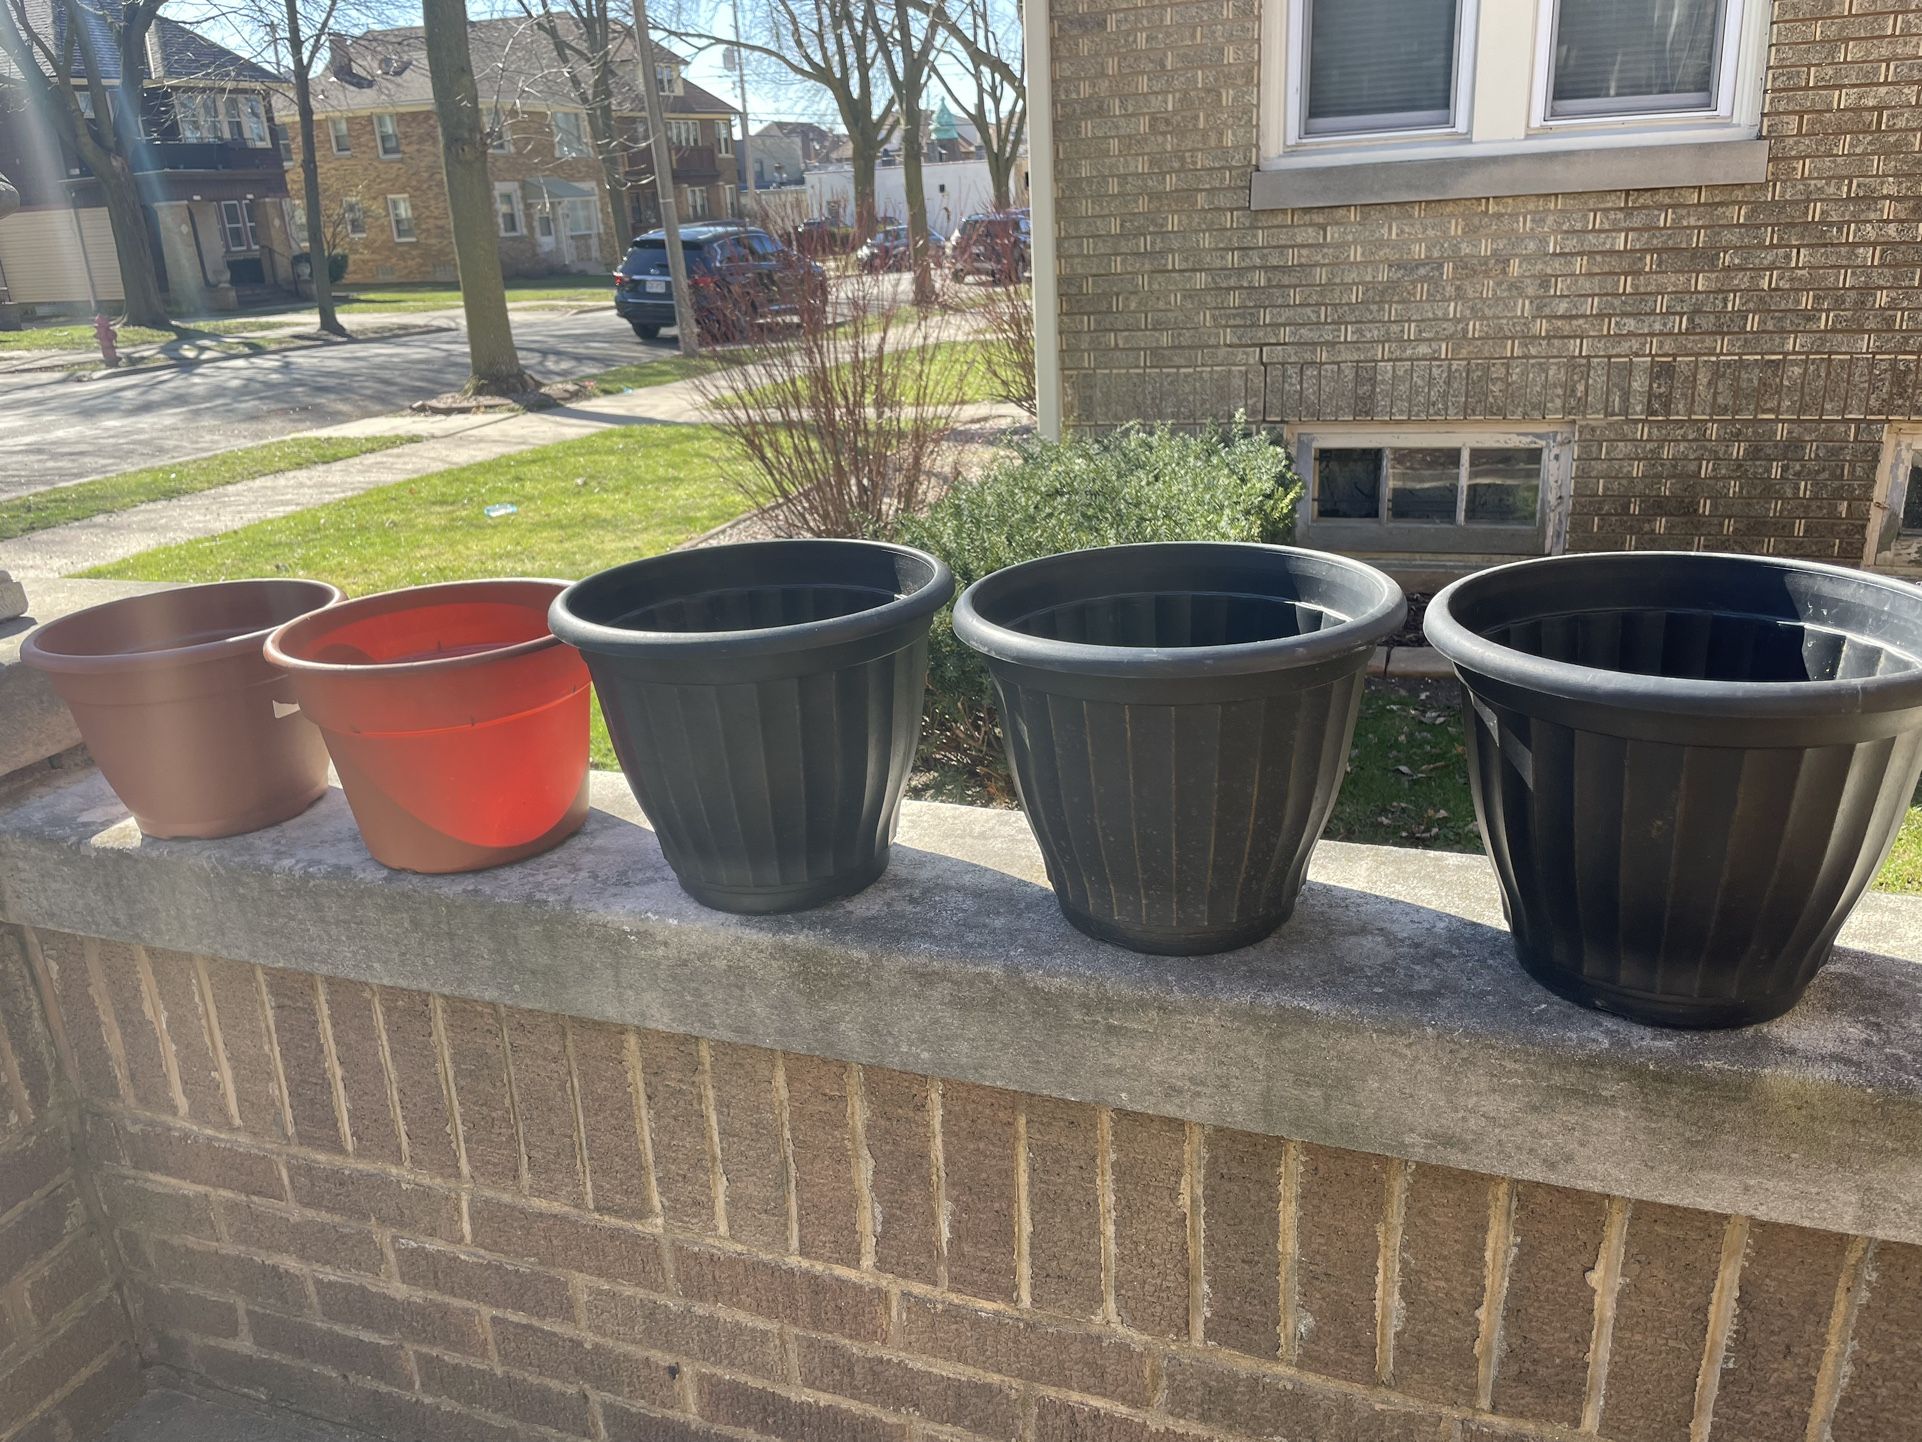 3 - 12” W x 9.5” H Black w/ Gold accent Planter Plastic Pots & 3 - 10” Plant pots included